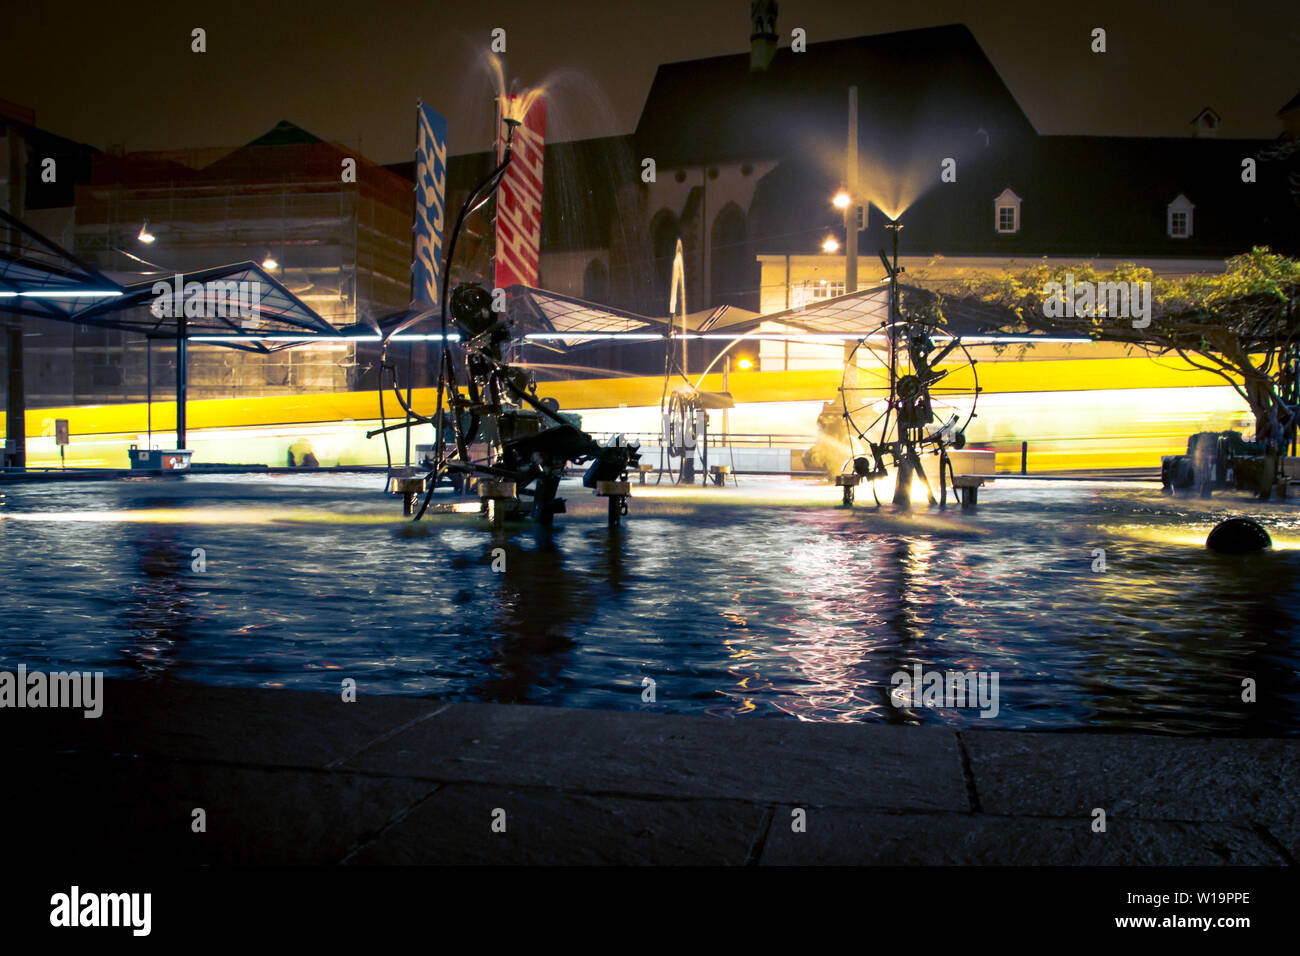 Tinguely Water Play Basel at night Stock Photo